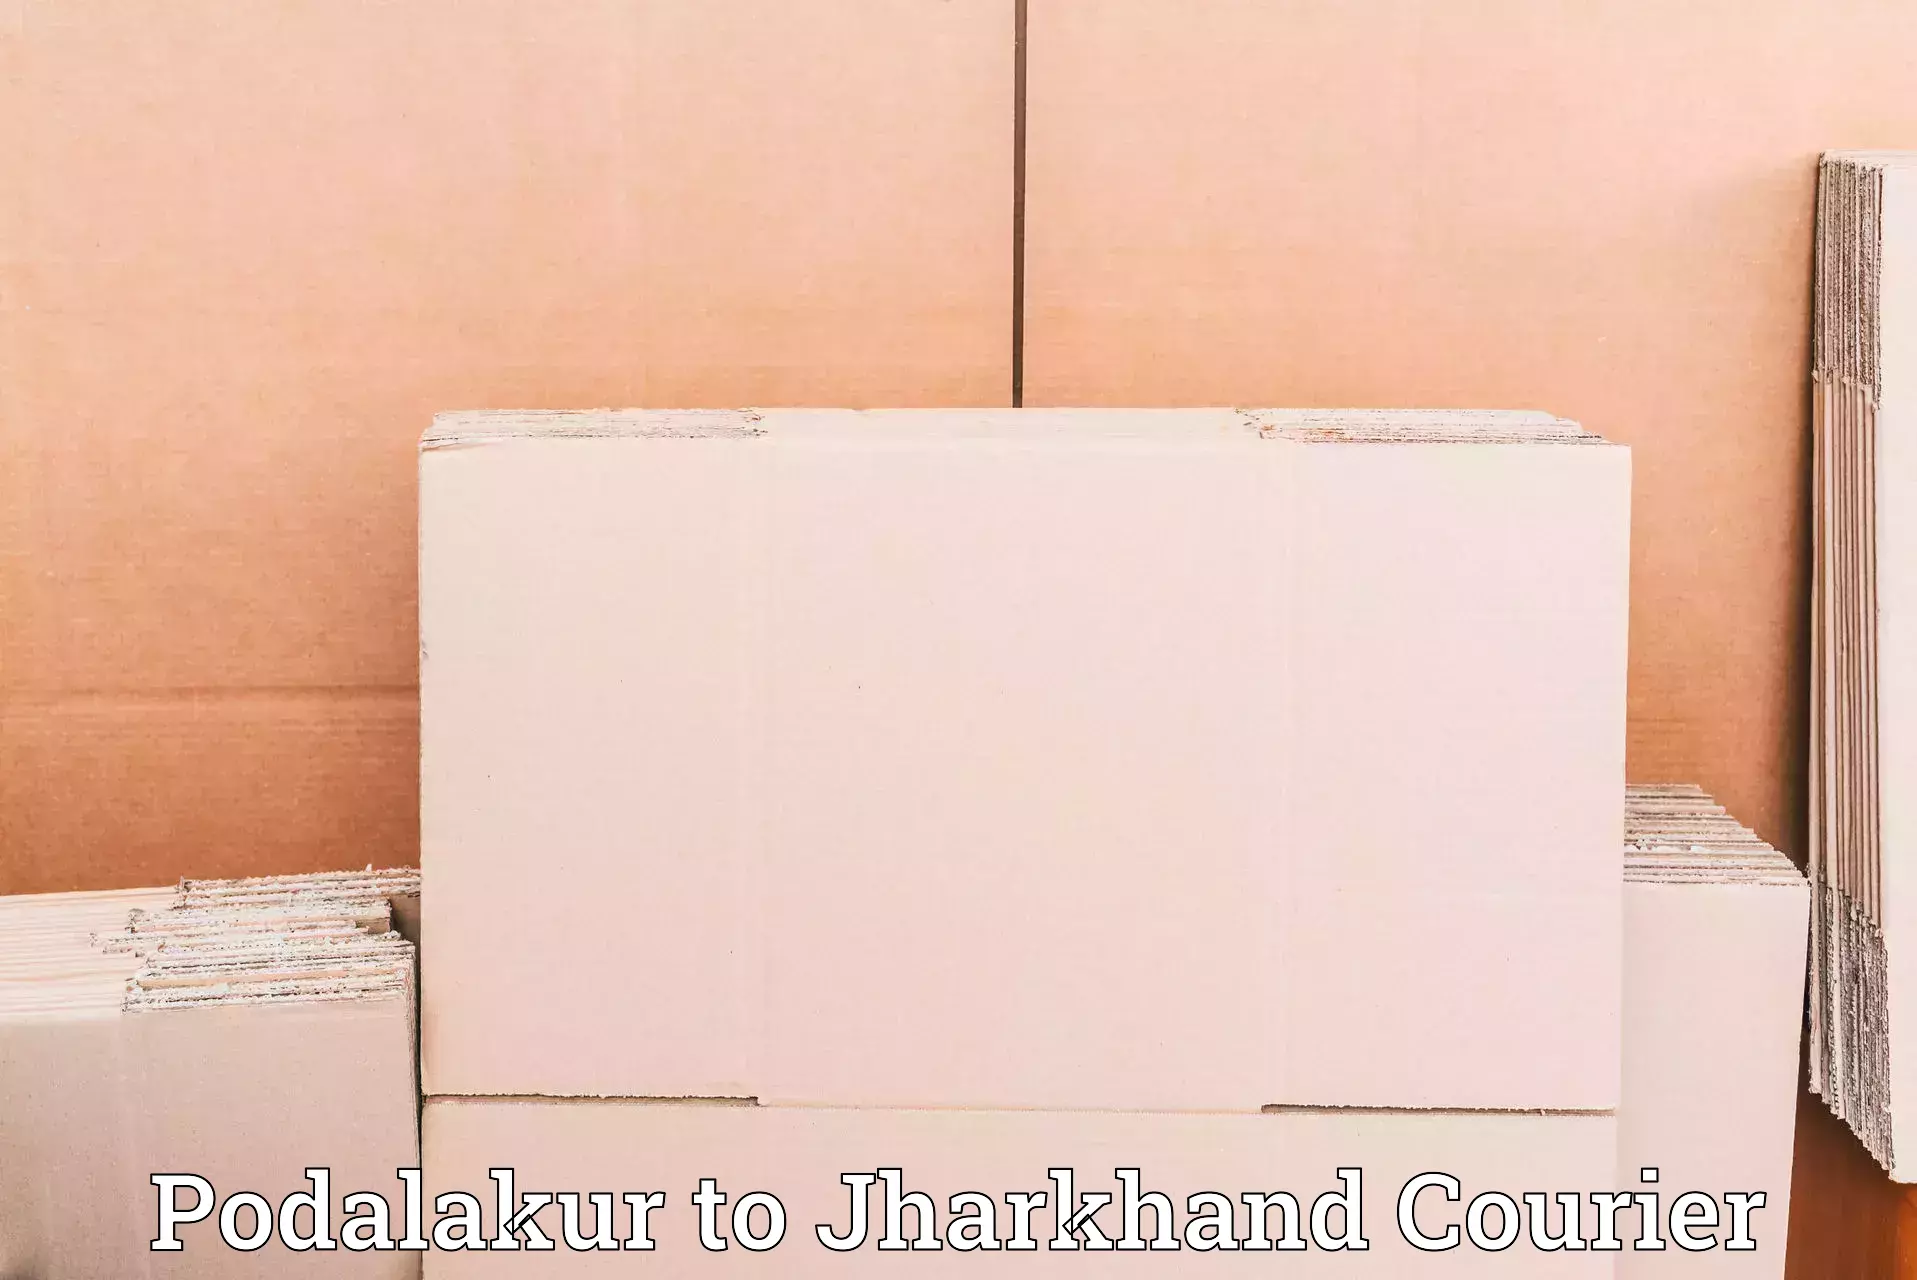 High-capacity parcel service Podalakur to Maheshpur